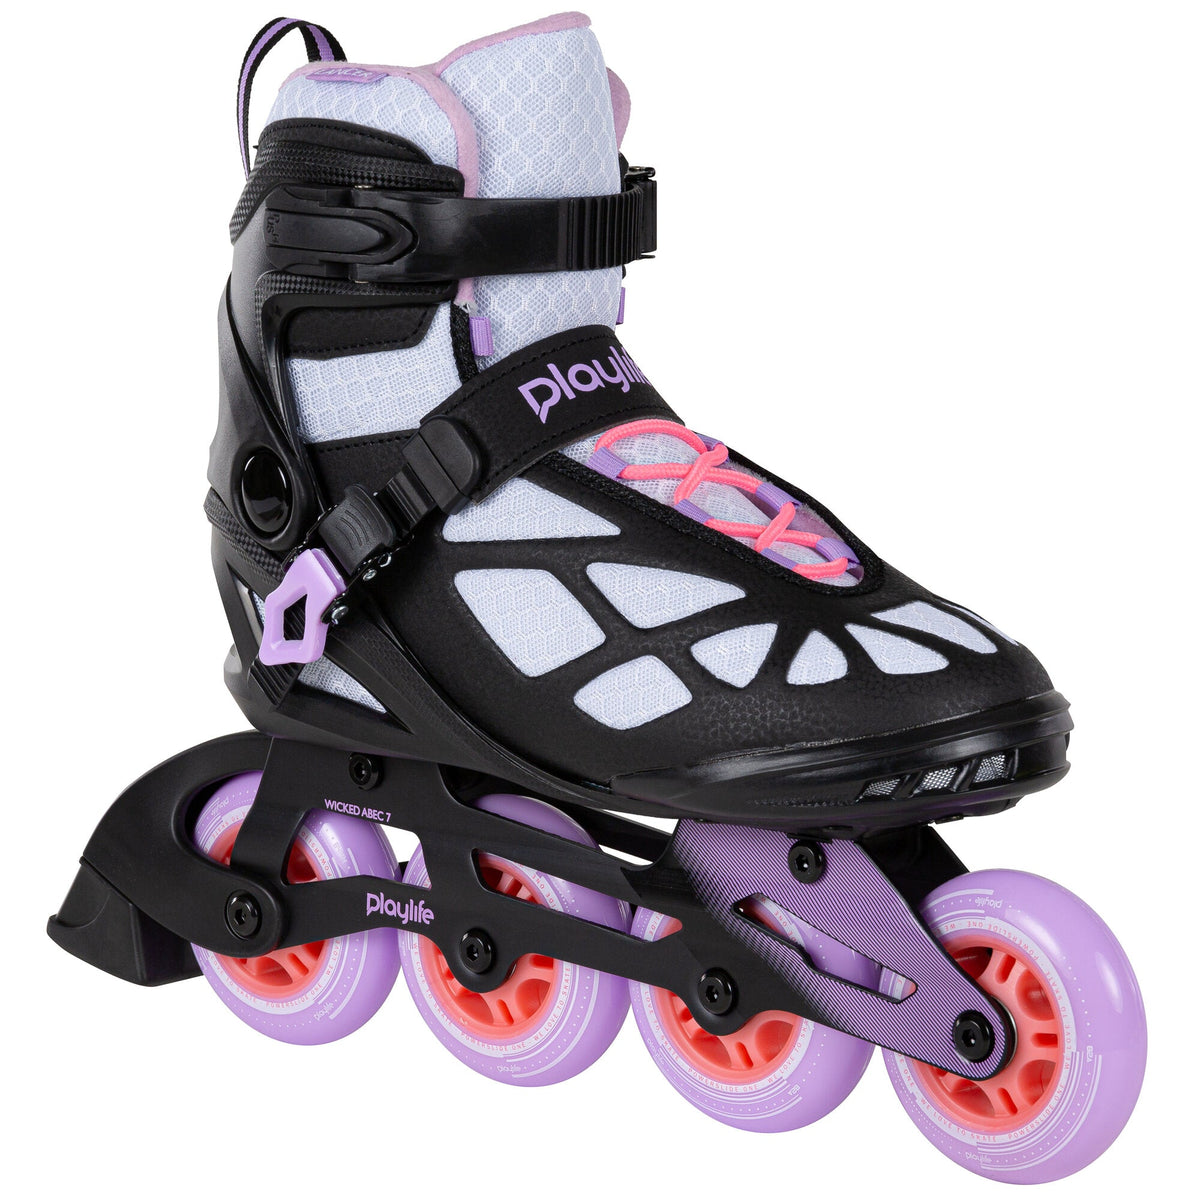 Playlife Lancer 84 Skate - White/Purple Inline Rec Skates